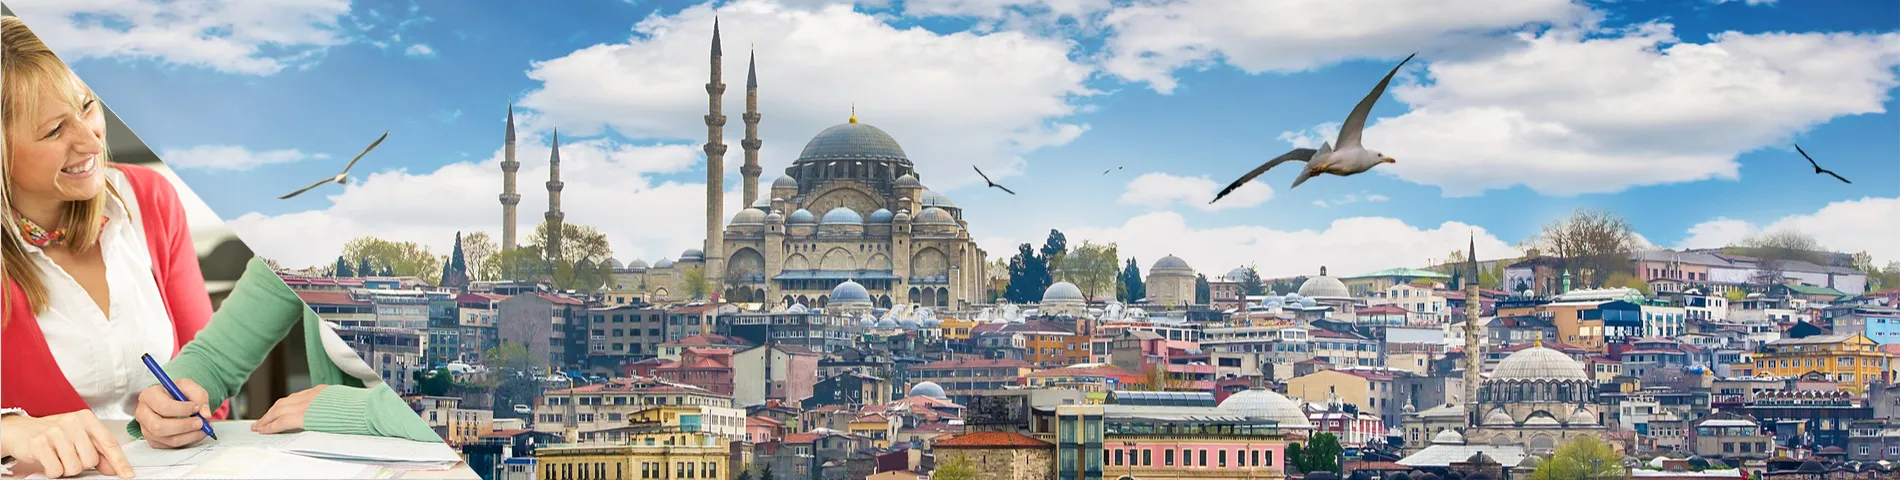 أسطنبول - ادرس واسكن في منزل مدرسك